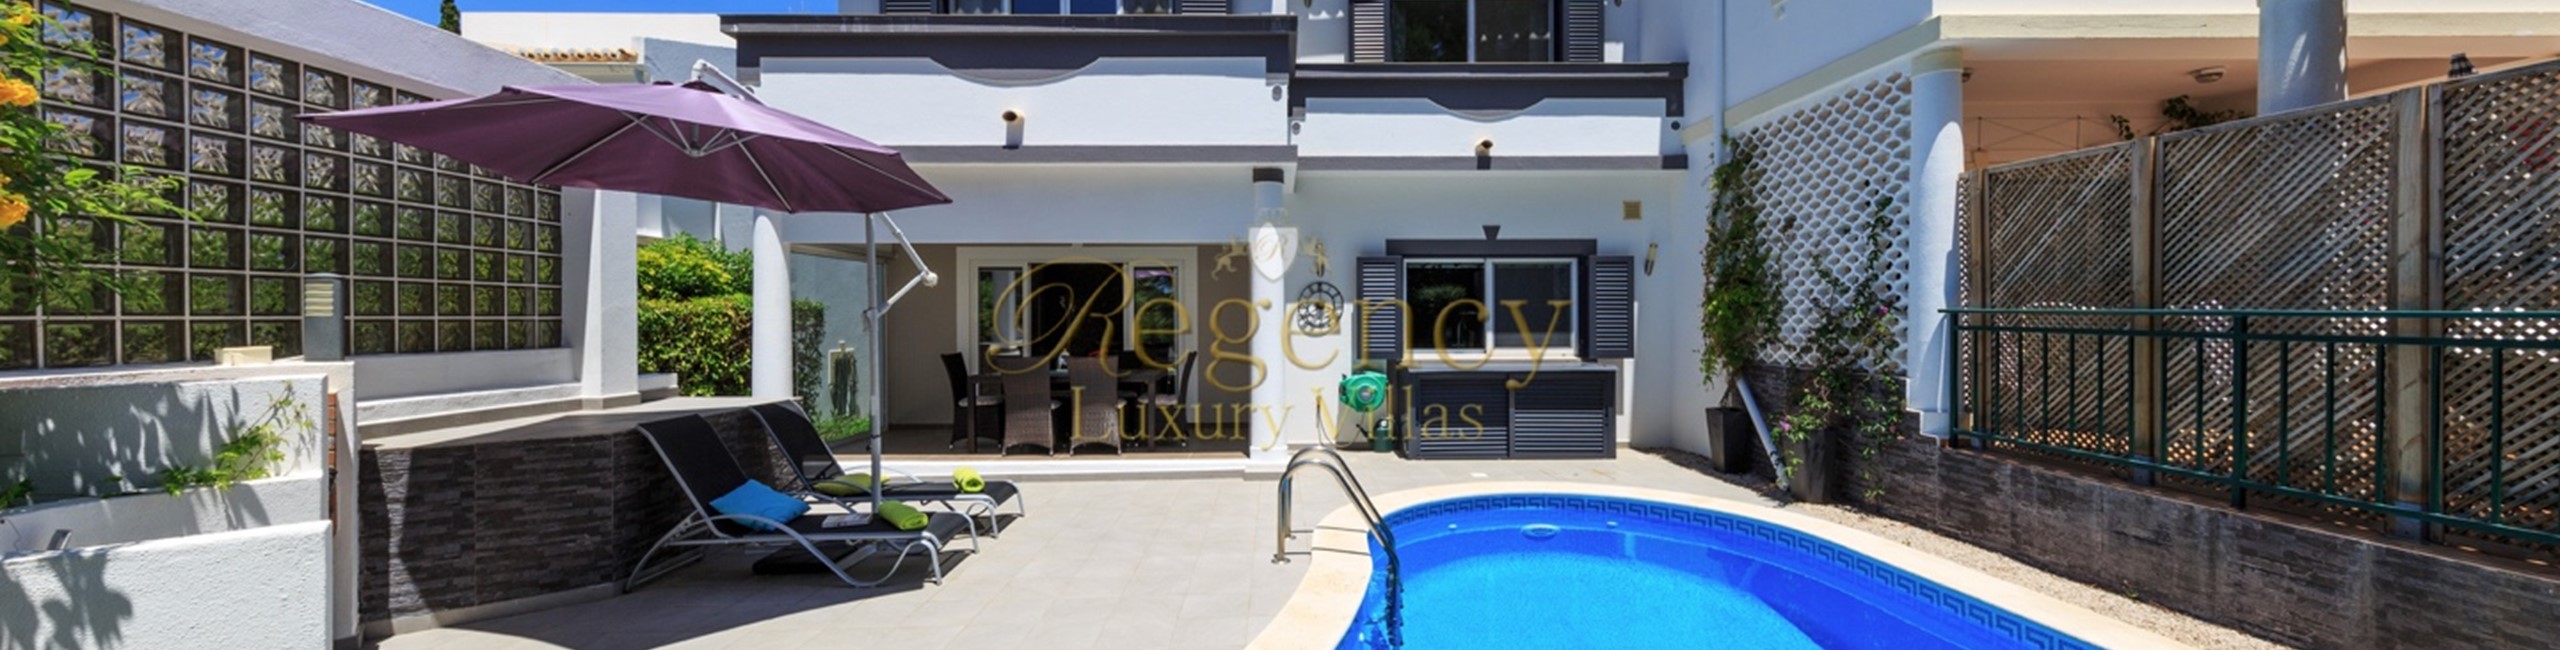 Villas To Rent In Vale Do Lobo Near The Praca Algarve Portugal